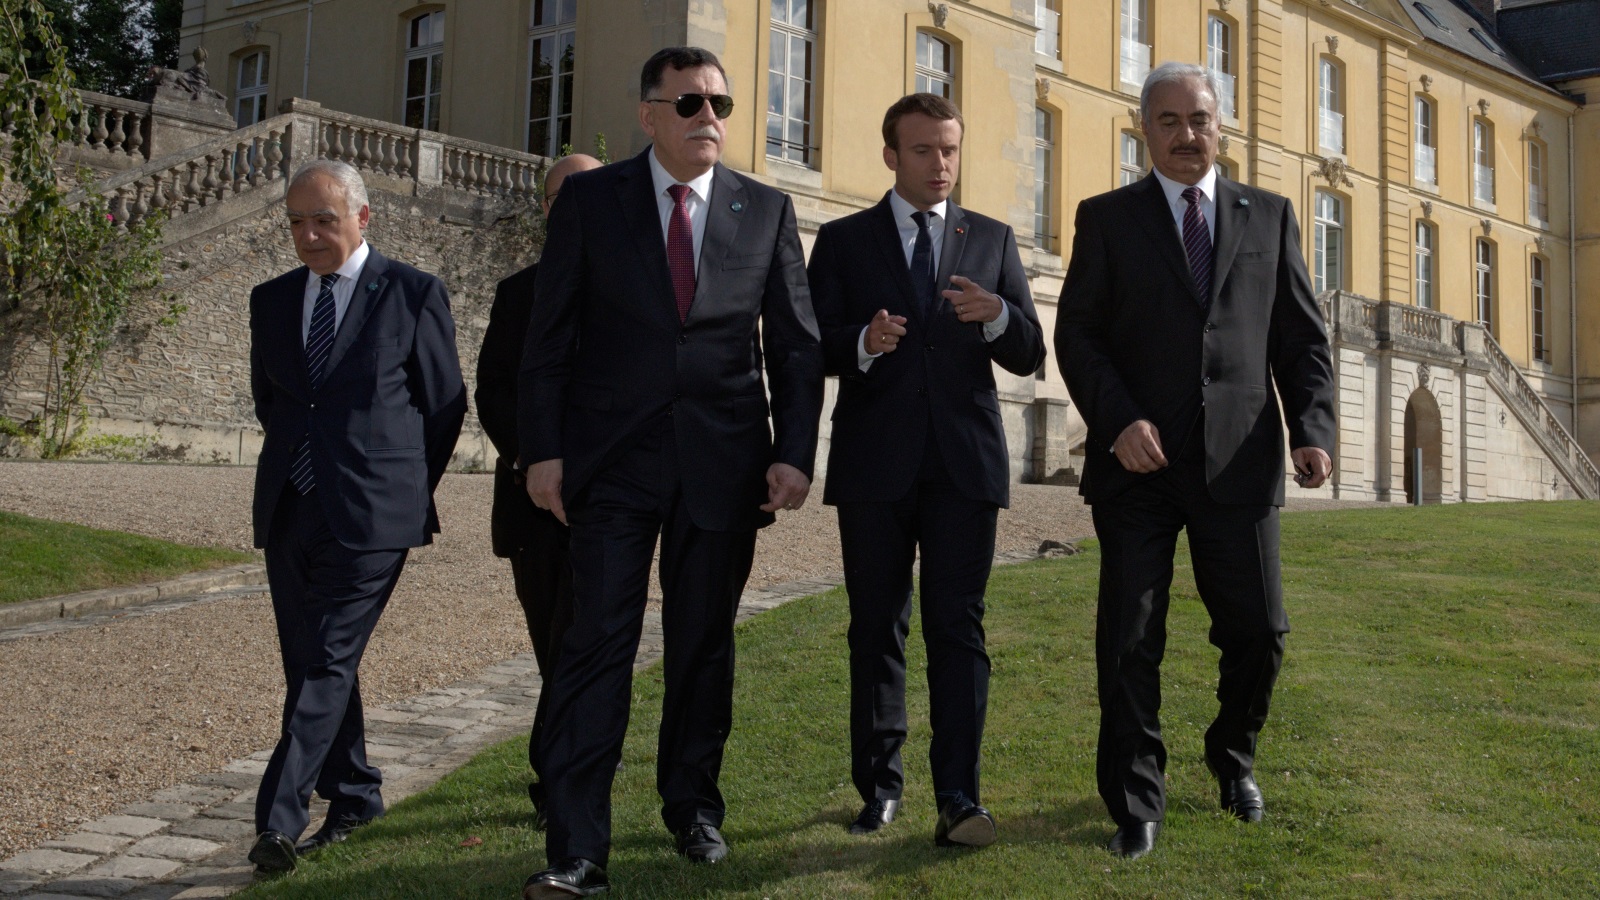  الرئيس الفرنسي ماكرون مع حفتر والسرّاج والمبعوث الأممي الجديد غسان سلامة (على اليسار) (رويترز)